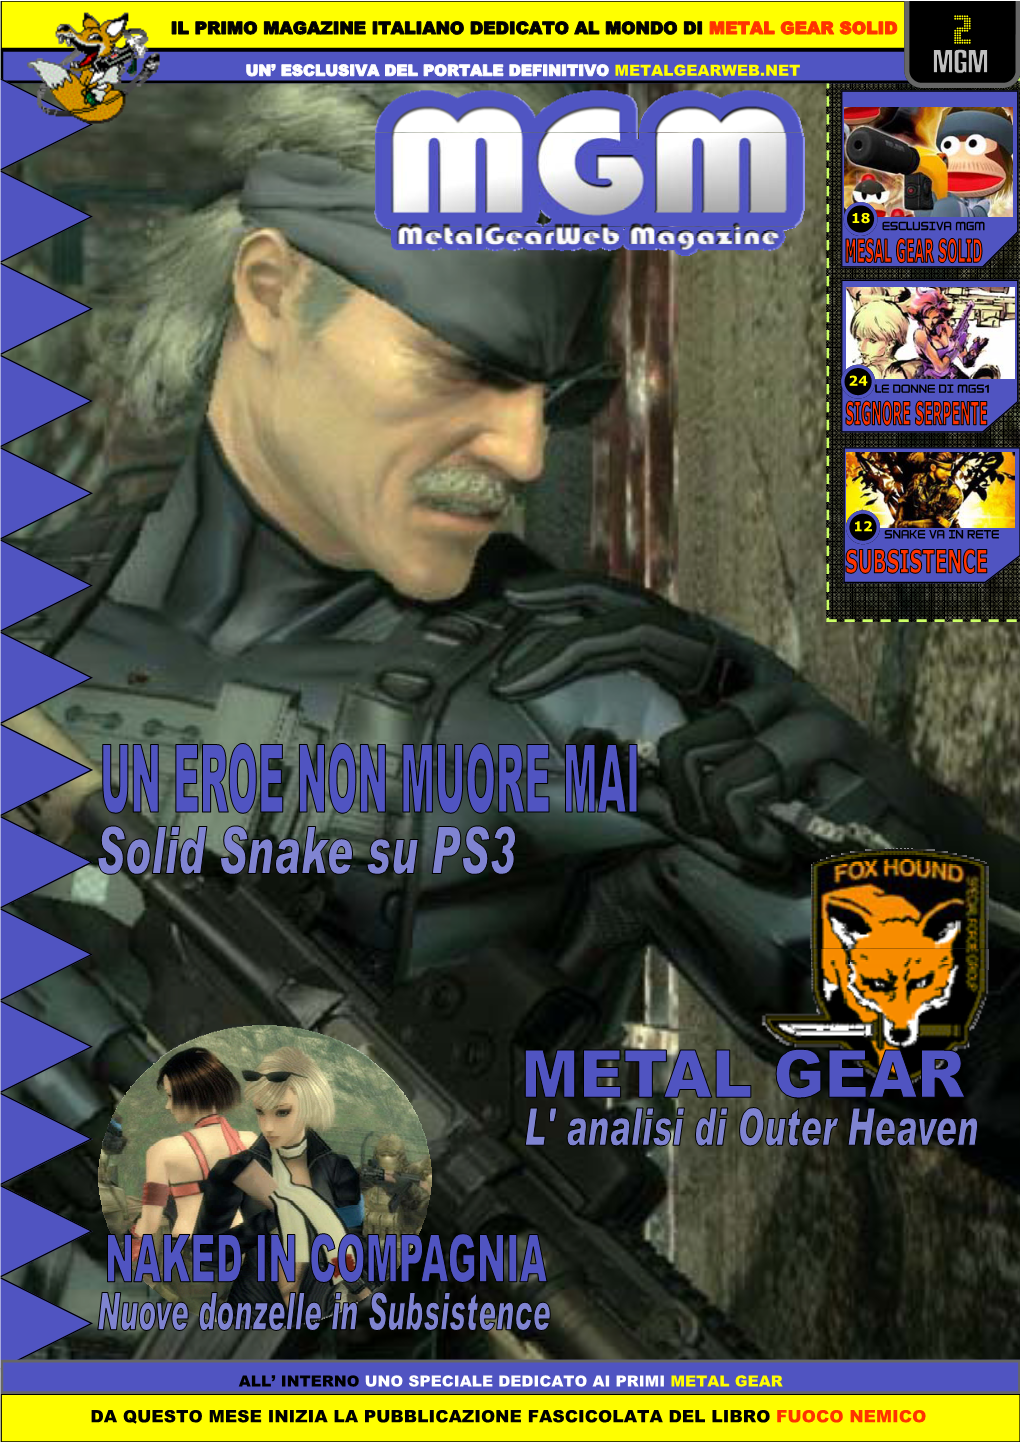 Il Primo Magazine Italiano Dedicato Al Mondo Di Metal Gear Solid Da Questo Mese Inizia La Pubblicazione Fascicolata Del Libro Fu